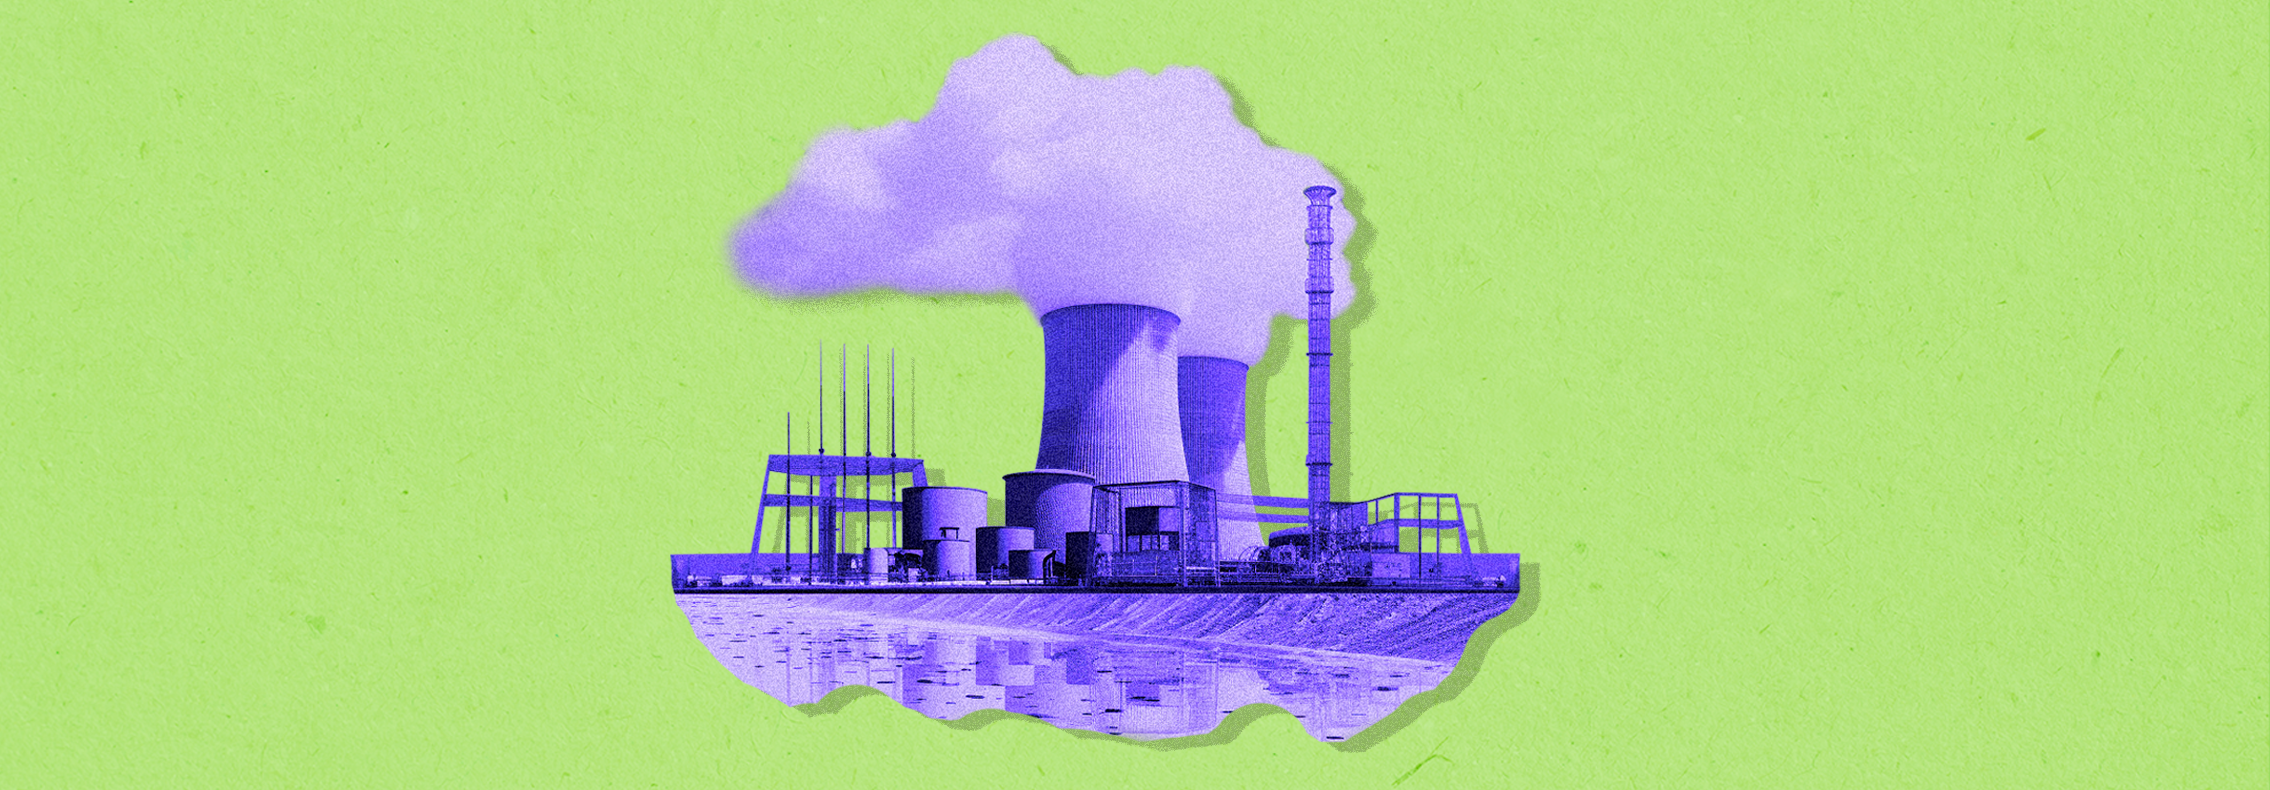 Como os reatores de sal fundido podem revolucionar a indústria de energia nuclear? 